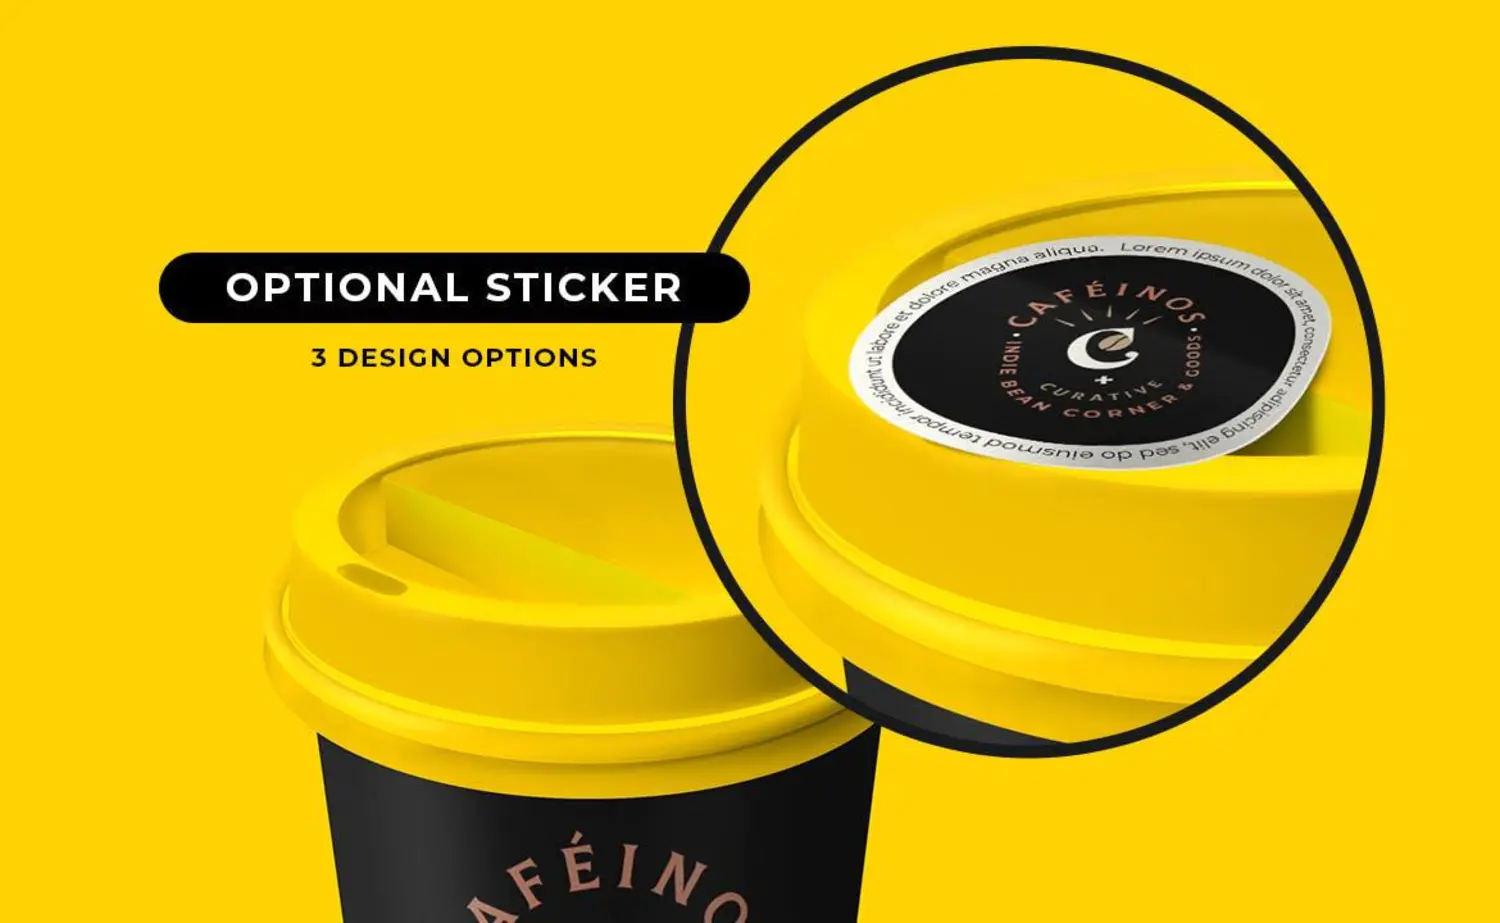 38 安全密封贴纸一次性带盖纸杯咖啡杯包装设计样机 Coffee Cup Mockup with Safety Seal Sticker